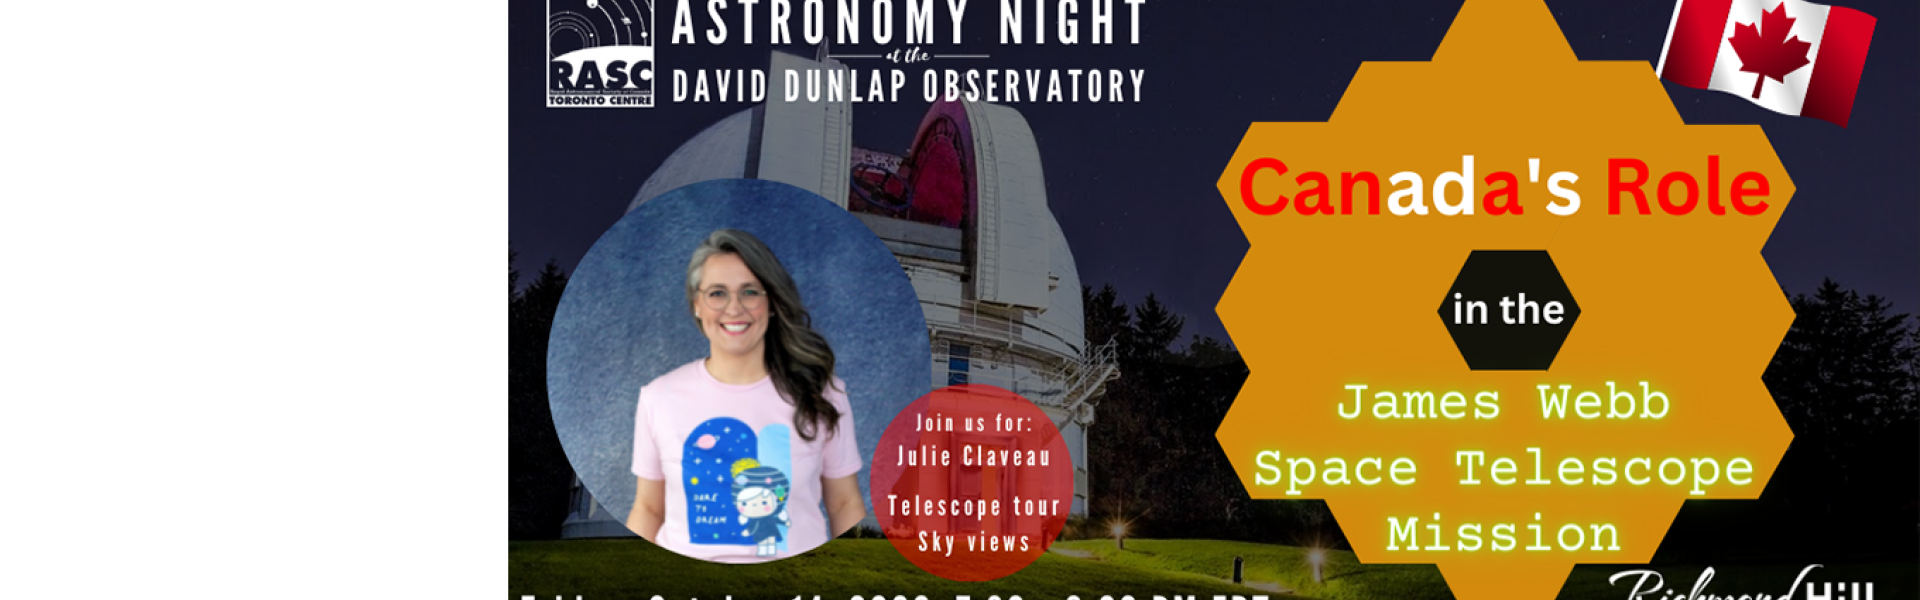 Astronomy Speakers Night